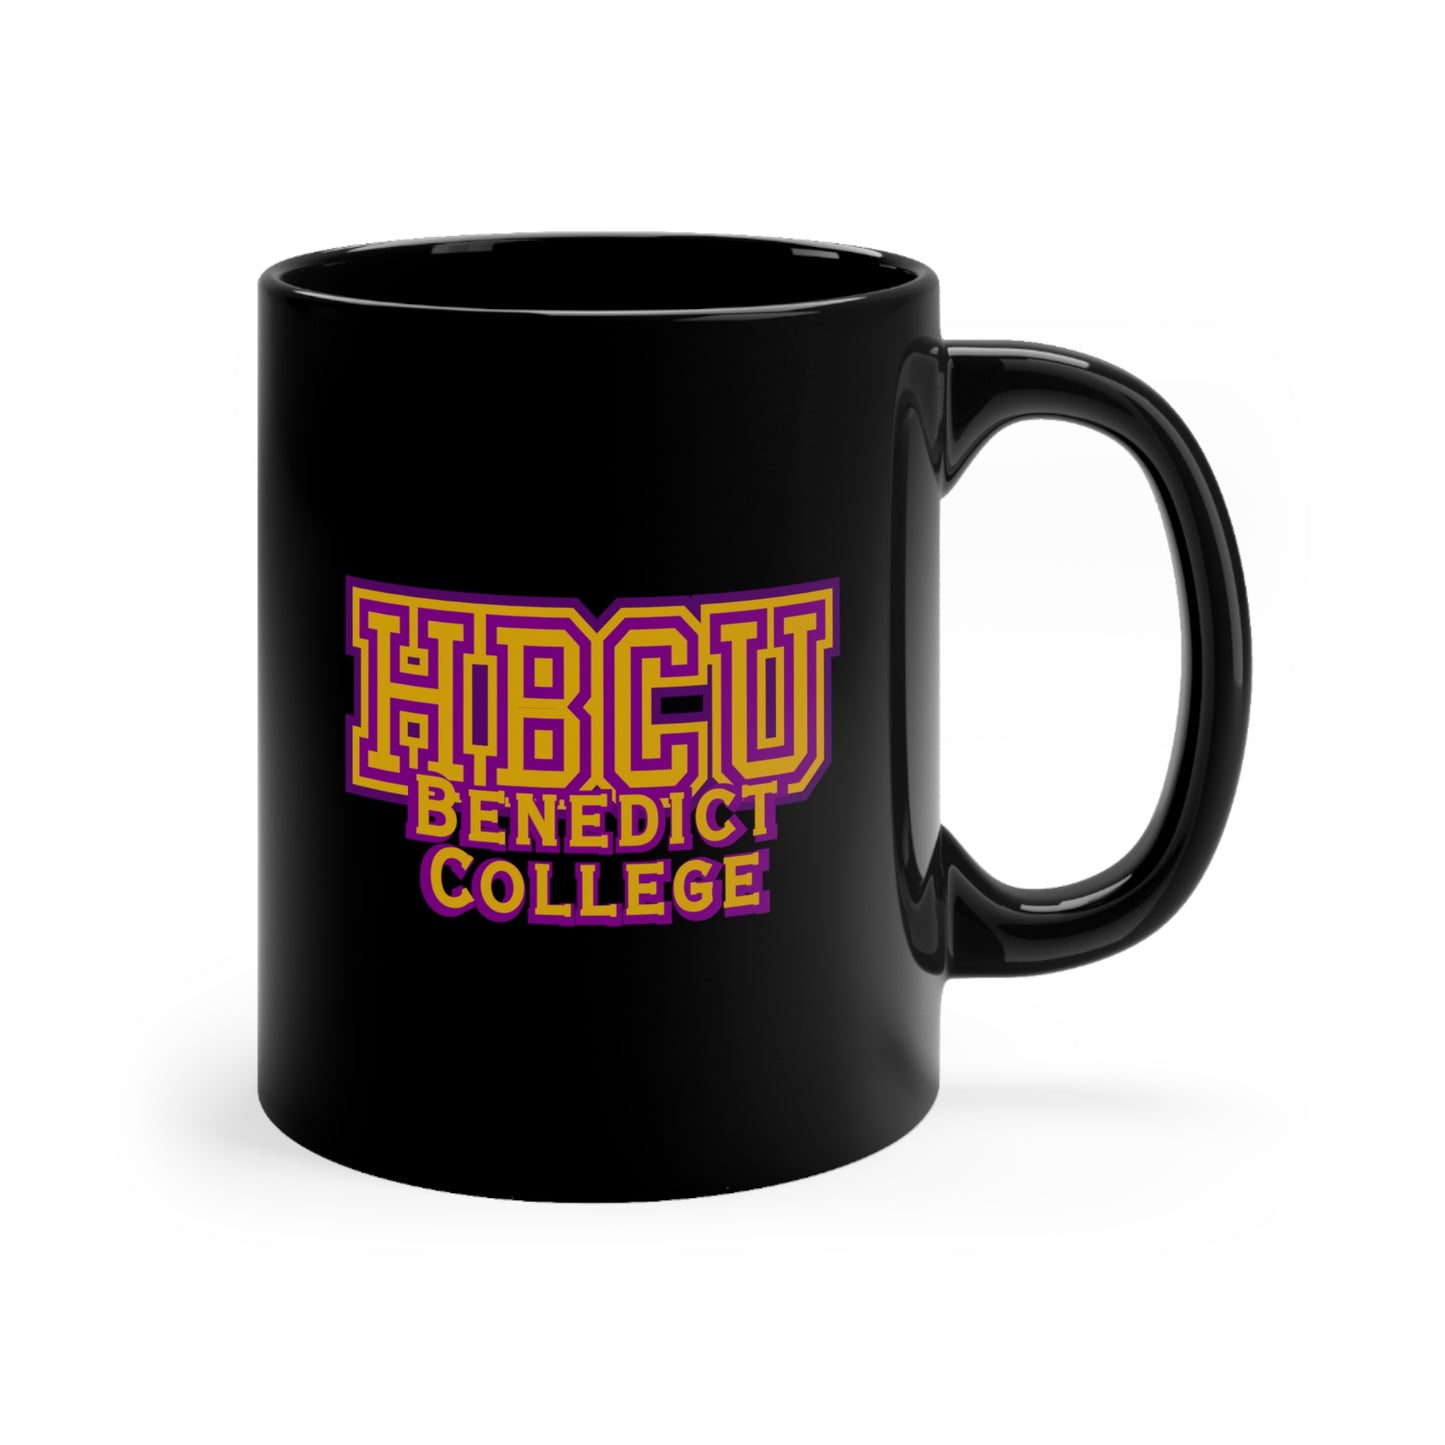 HBCU Benedict College Mug 11oz